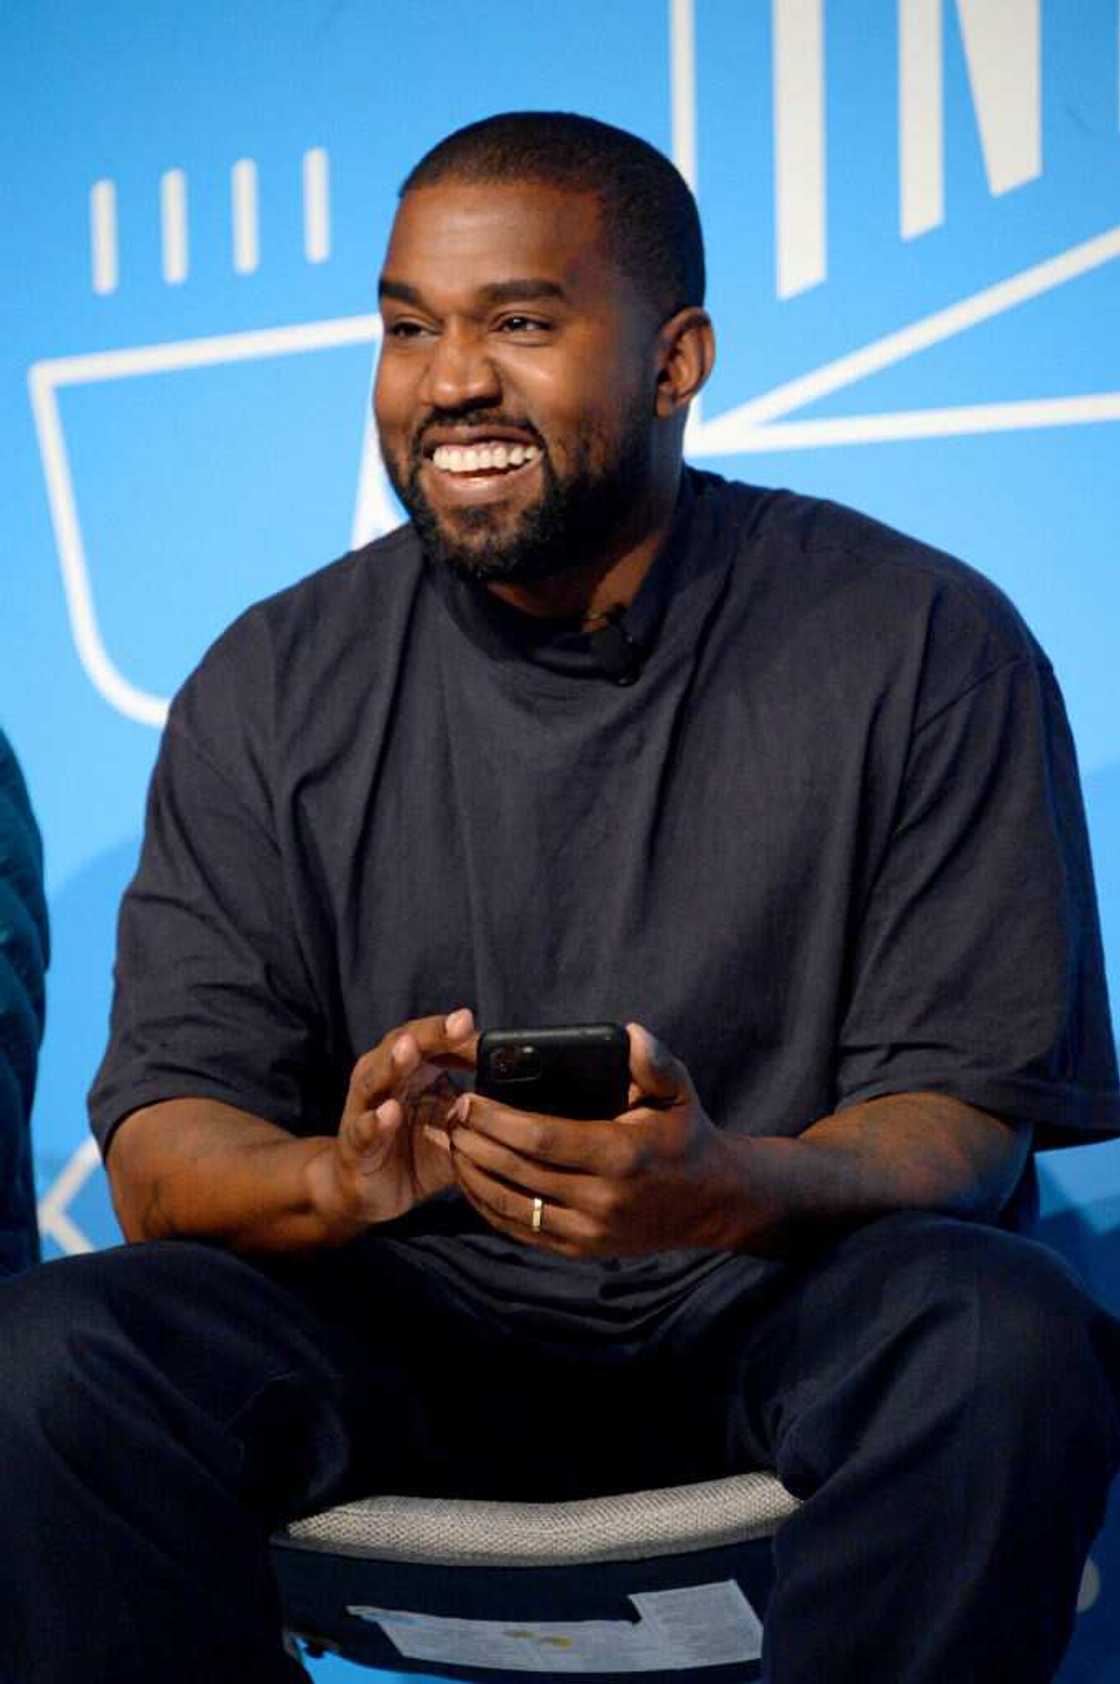 Kanye West s'exprime sur scène lors du "Kanye West et Steven Smith en conversation avec Mark Wilson" le 07 novembre 2019 à New York. (Photo de Brad Barket/Getty Images pour Fast Company)